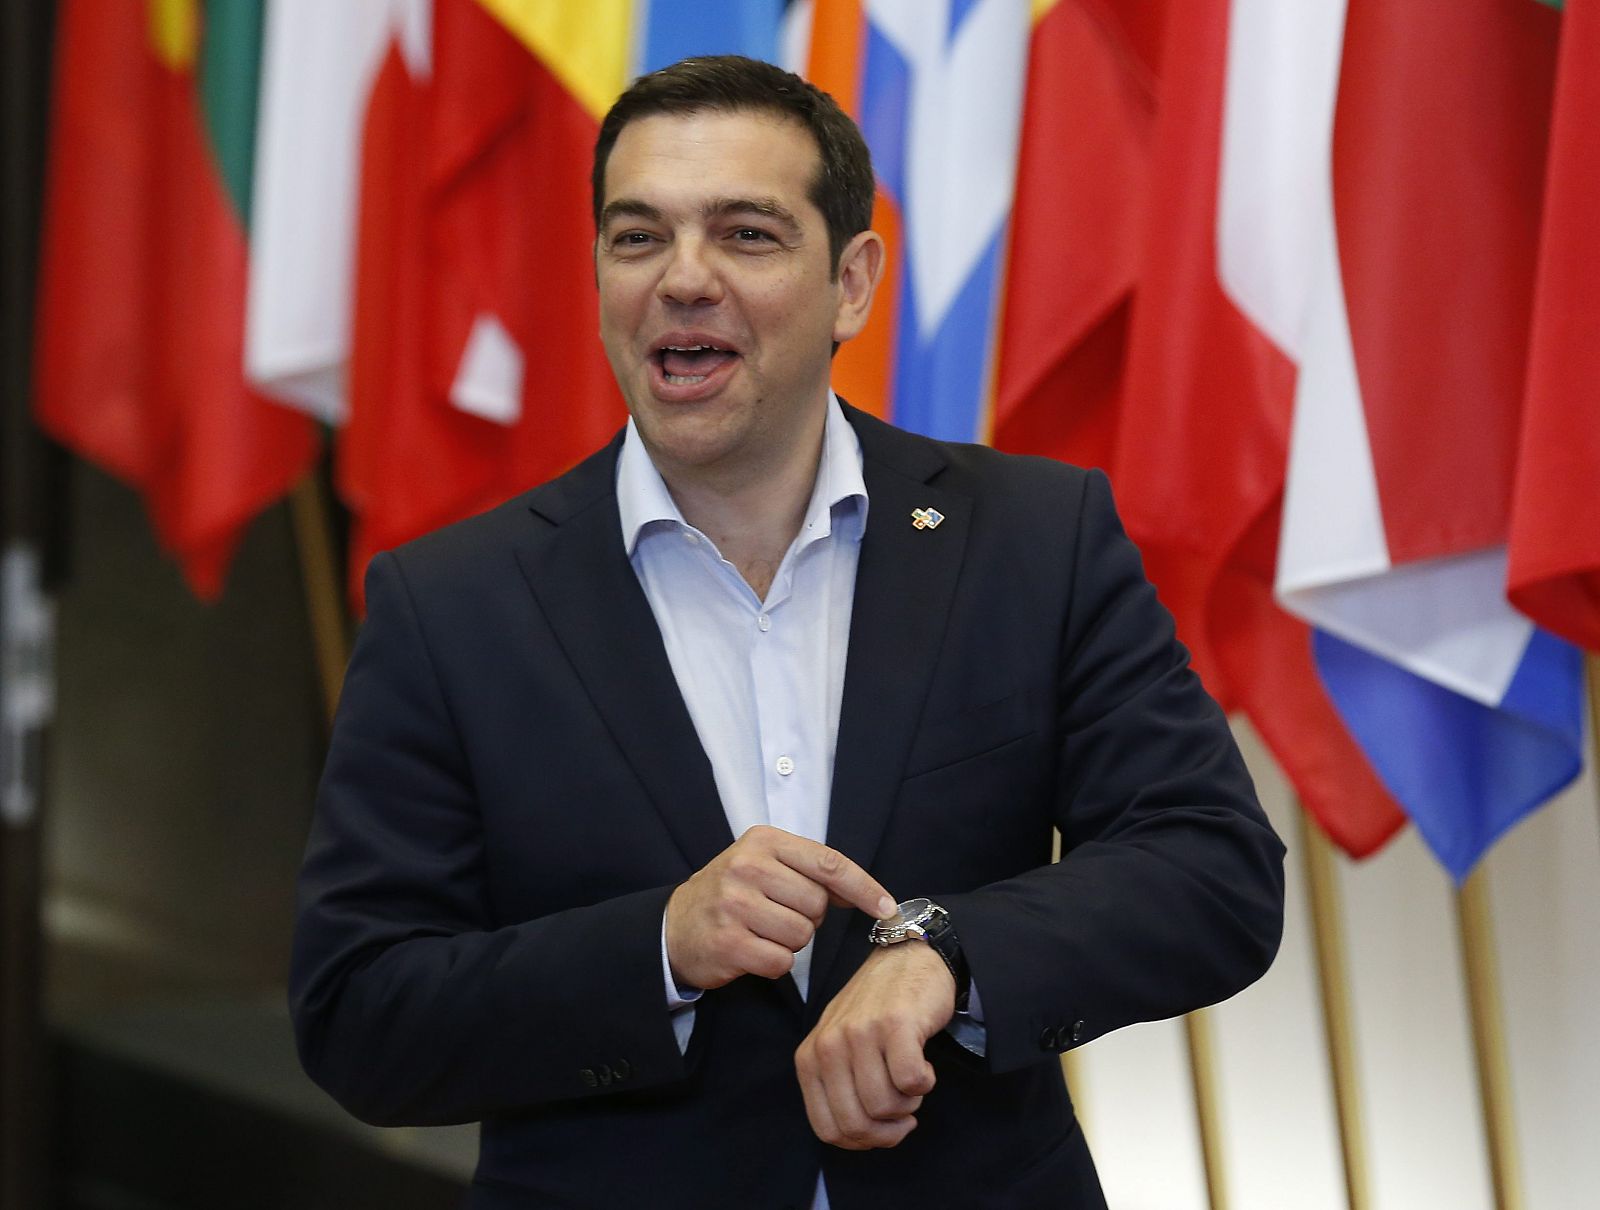 El primer ministro de Grecia, Alexis Tsipras, sale al final del primer día de la cumbre de jefes de Estado y de Gobierno de la Unión Europea (UE) y la Comunidad de Estados Latinoamericanos y Caribeños (Celac) en Bruselas (Bélgica).